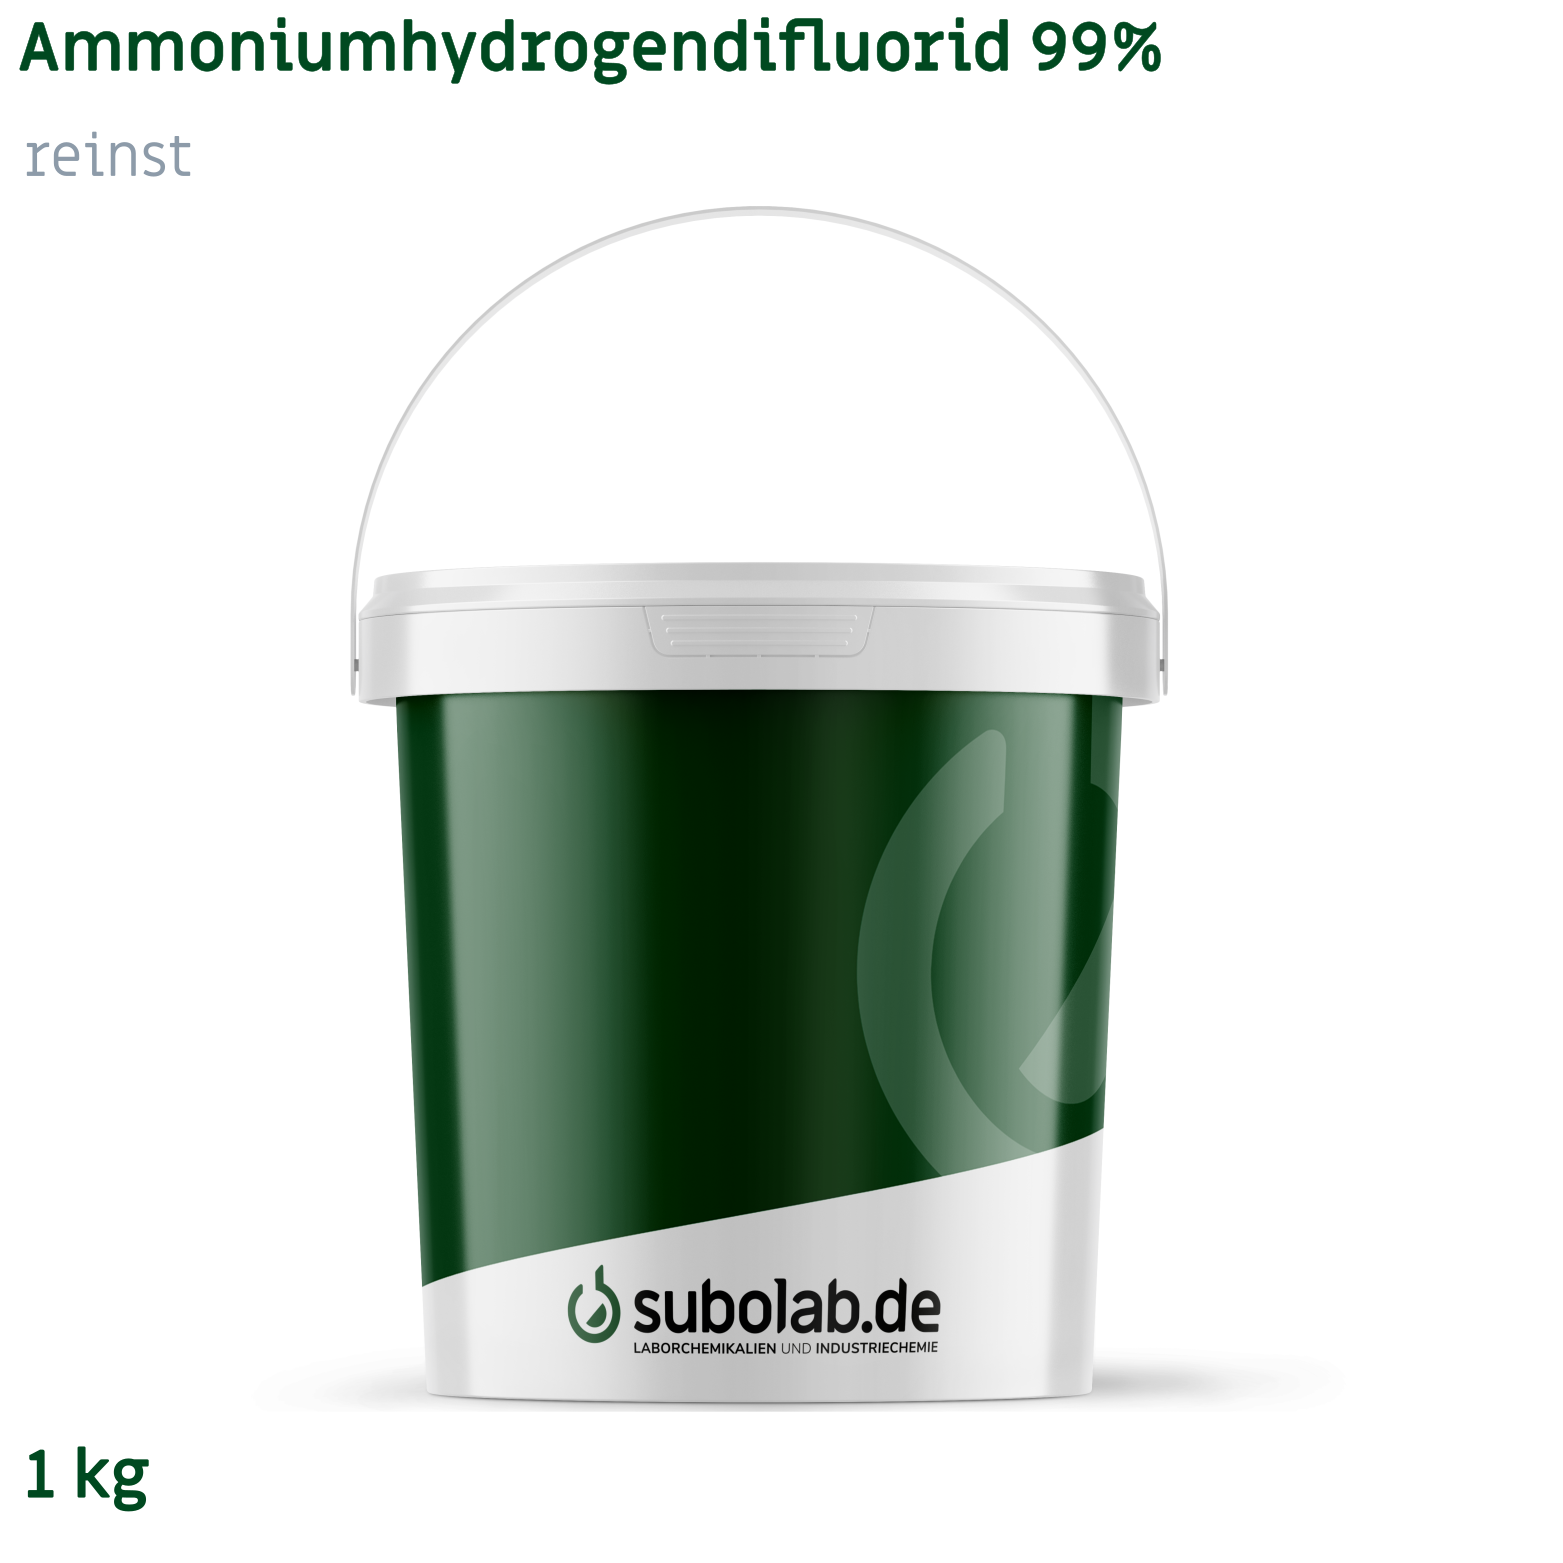 Bild von Ammoniumhydrogendifluorid 99% reinst (1 kg)